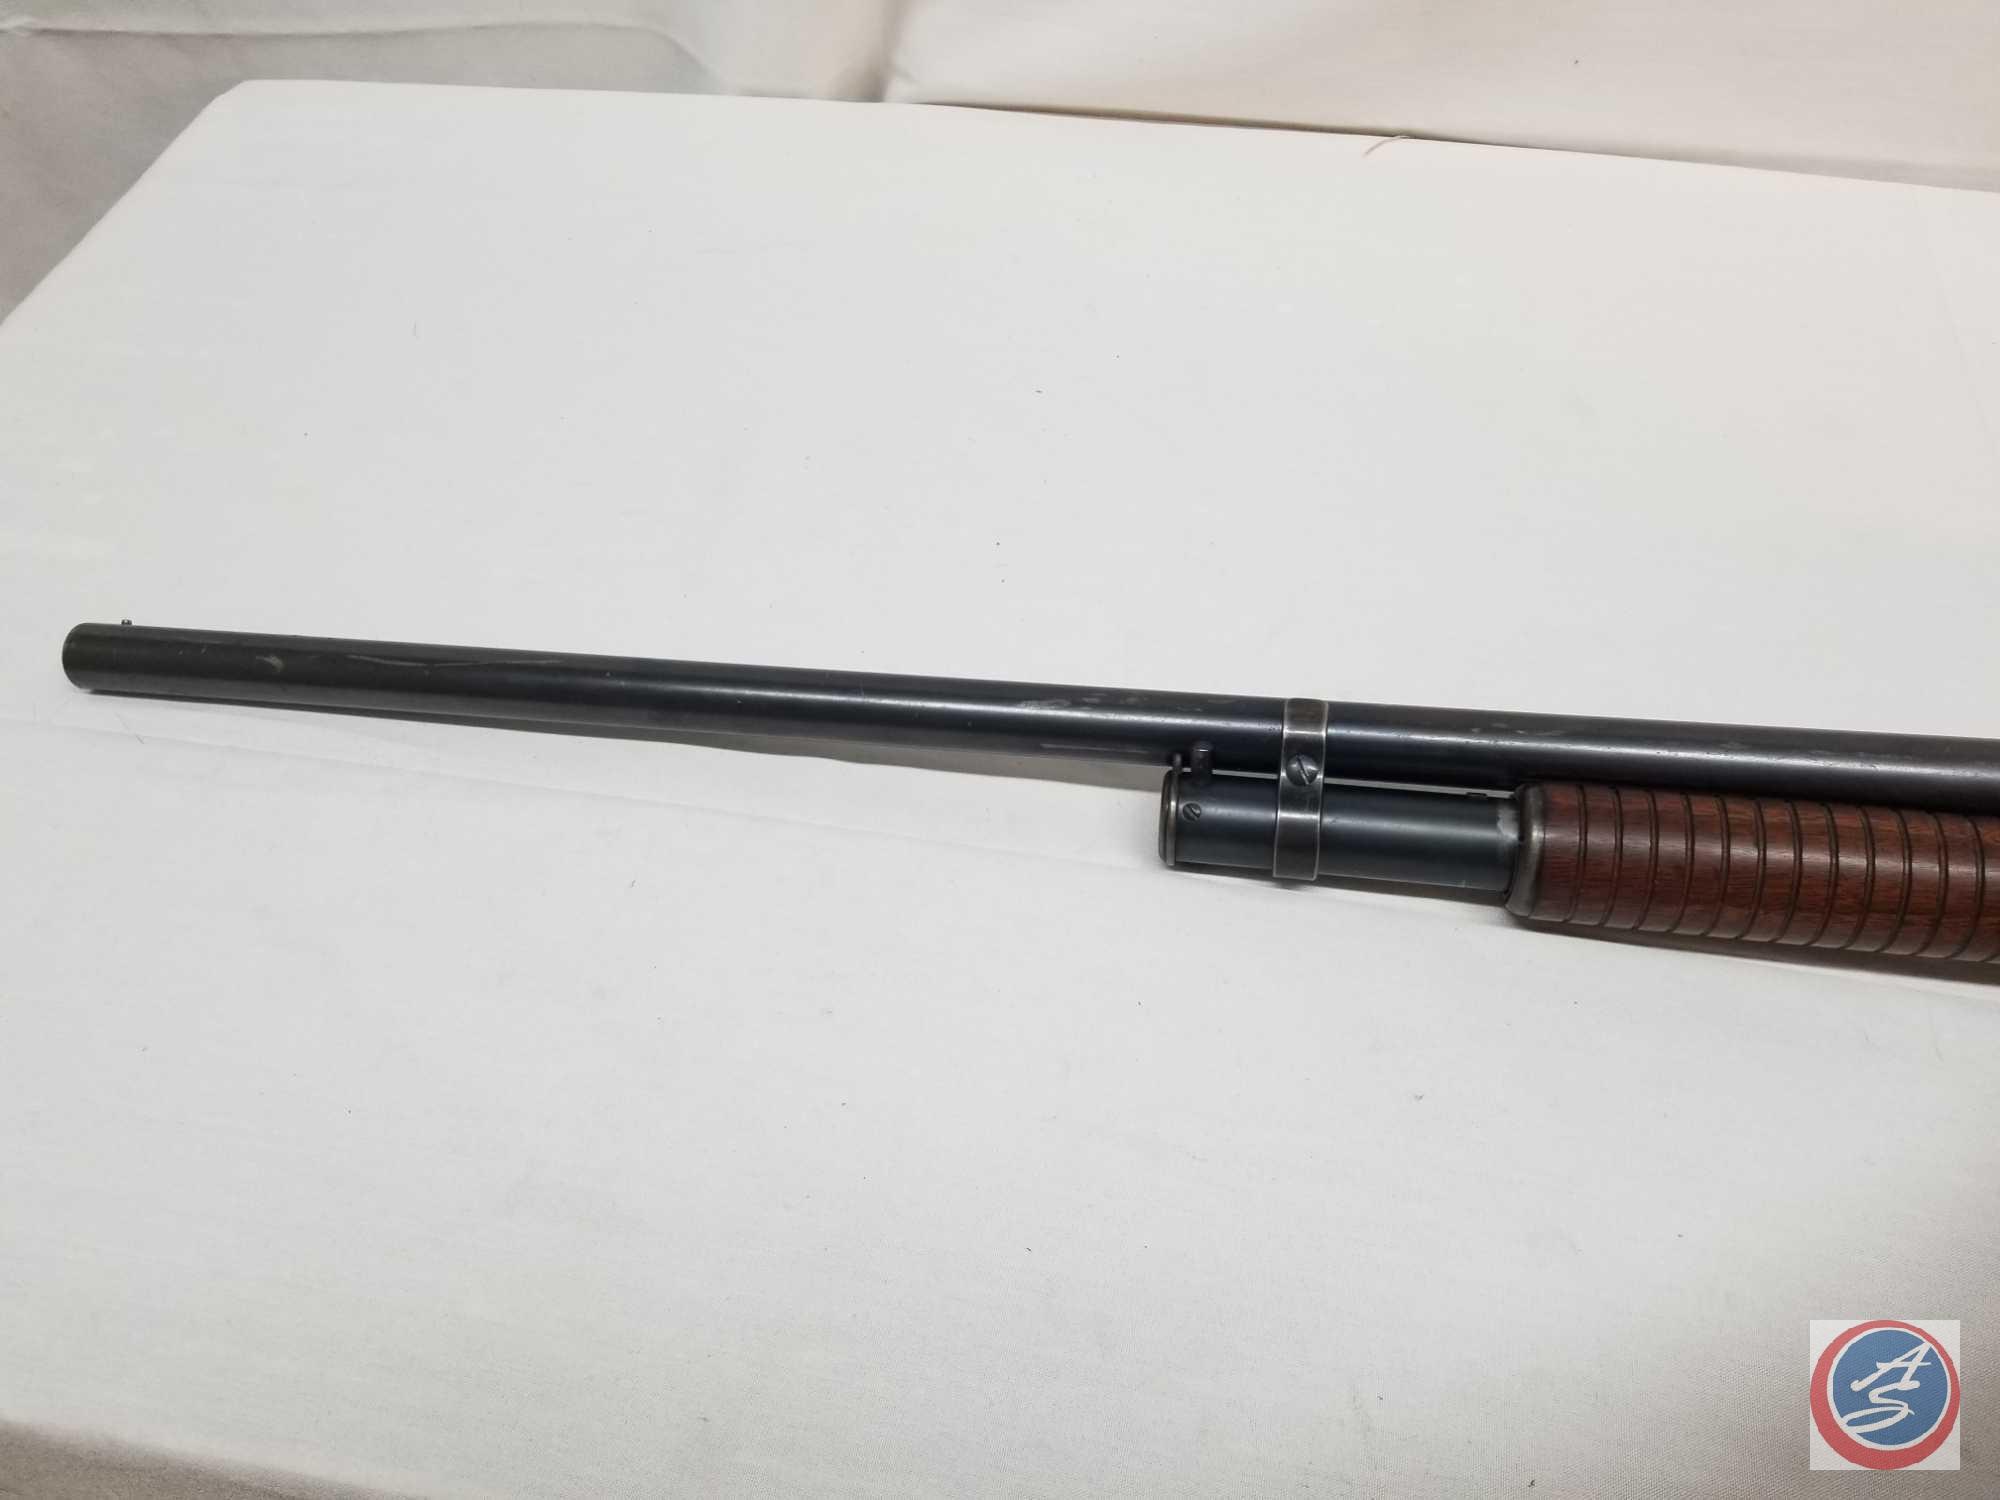 Winchester Model 1897 12 GA Shotgun Vintage Winchester Pump Shotgun with 30 inch barrel. Mfg. 1925